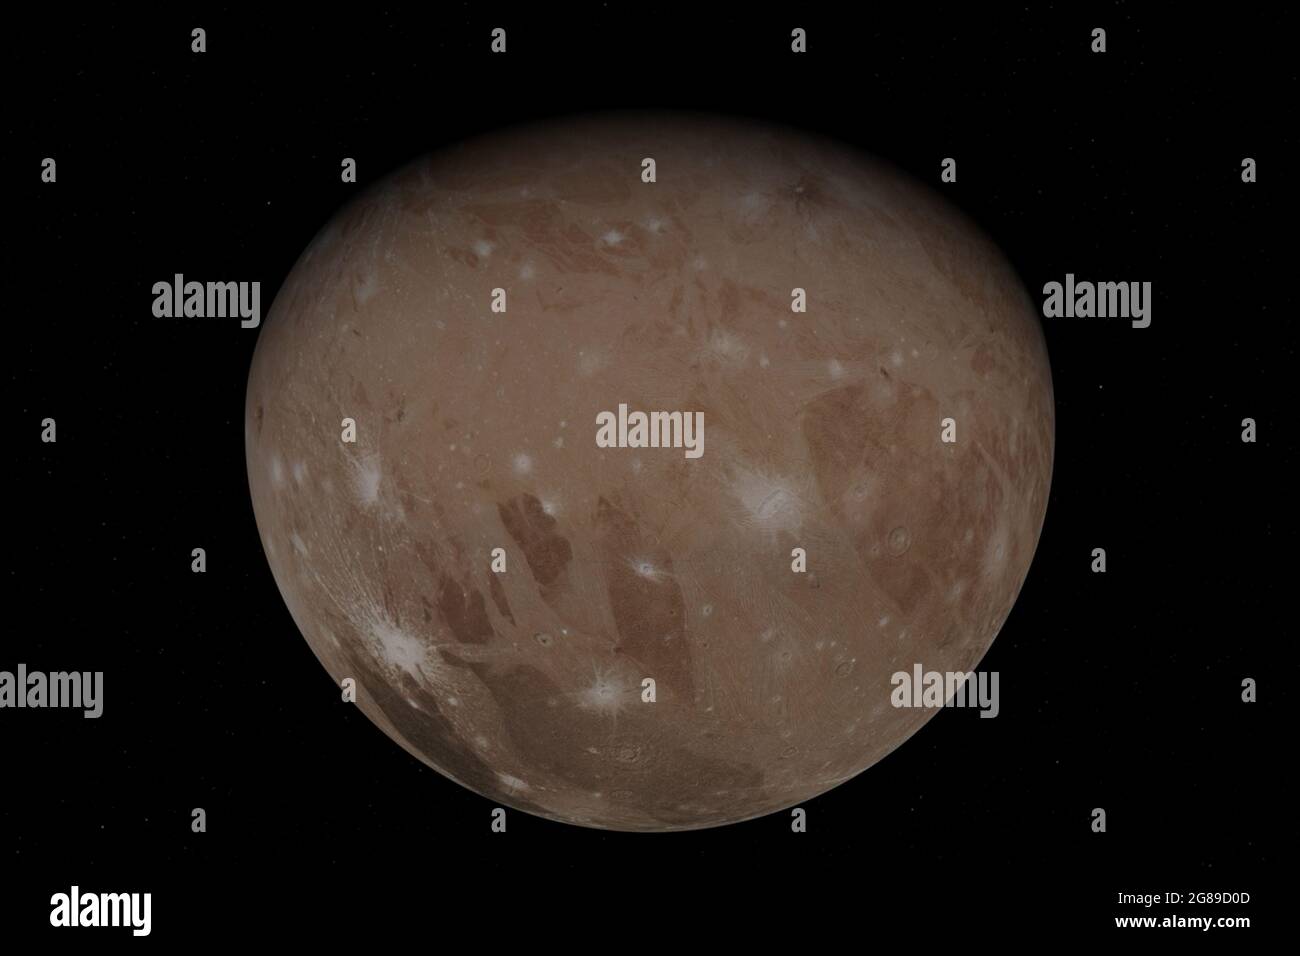 Juli 2021. Am 7. Juni 2021 flog die Juno-Sonde der NASA näher an Jupiters größten Mond, Ganymede, als jede andere Raumsonde seit mehr als zwei Jahrzehnten, und bot dramatische Einblicke in die eisige Kugel und den Gasriesen. Der Vorbeiflug war der erste Nahaufnahme-Blick auf den Großmond seit dem letzten Vorbeiflug des NASA-Orbiters Galileo im Jahr 2000. Weniger als einen Tag später machte Juno seinen 34. Vorbeiflug von Jupiter und raste in weniger als drei Stunden über seine rauschende Atmosphäre von Pol zu Pol. NASA/UPI Credit: UPI/Alamy Live News Stockfoto